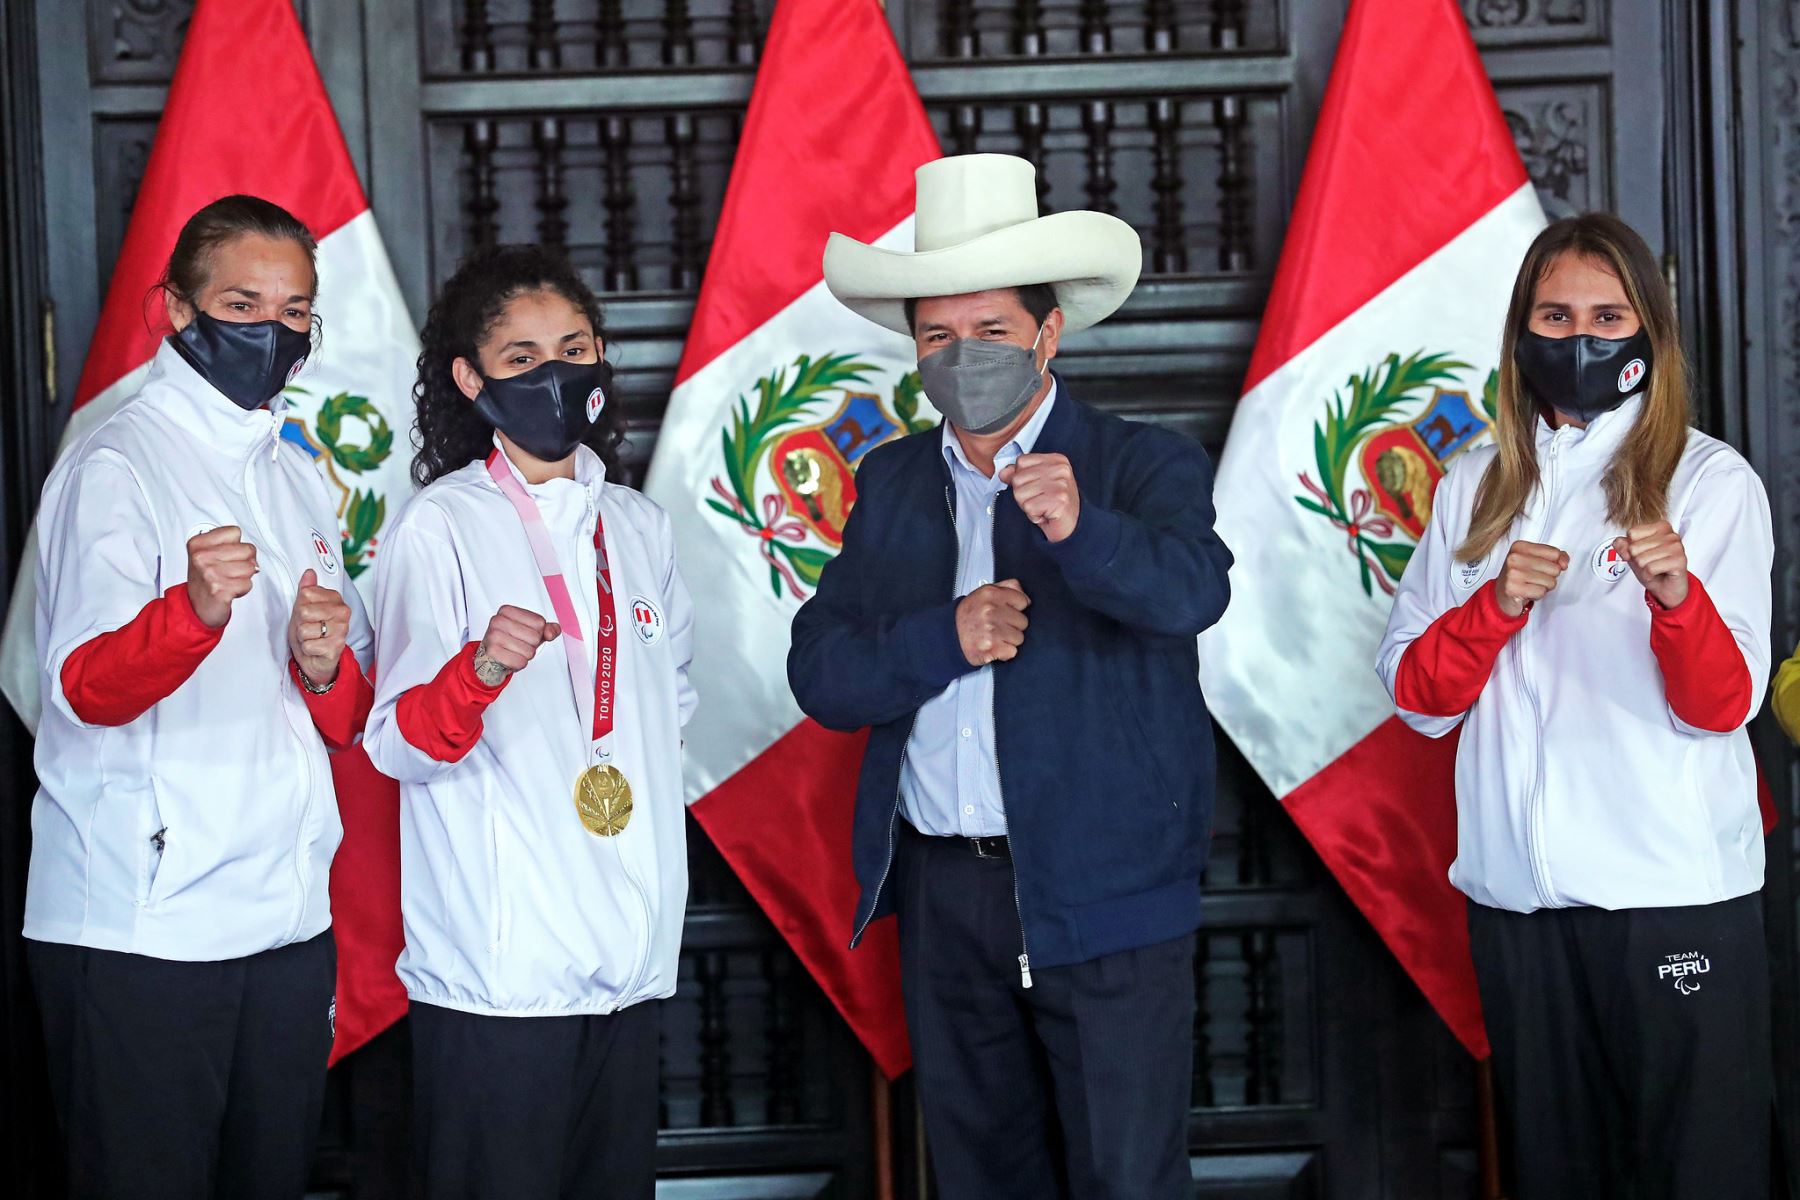 El Presidente de la República, Pedro Castillo, participó en la ceremonia de reconocimiento y premiación de la paradeportista Angélica Espinoza, medallista de oro en la disciplina de taekwondo, en los Juegos Paralímpicos de Tokio. Foto: Prensa Presidencia